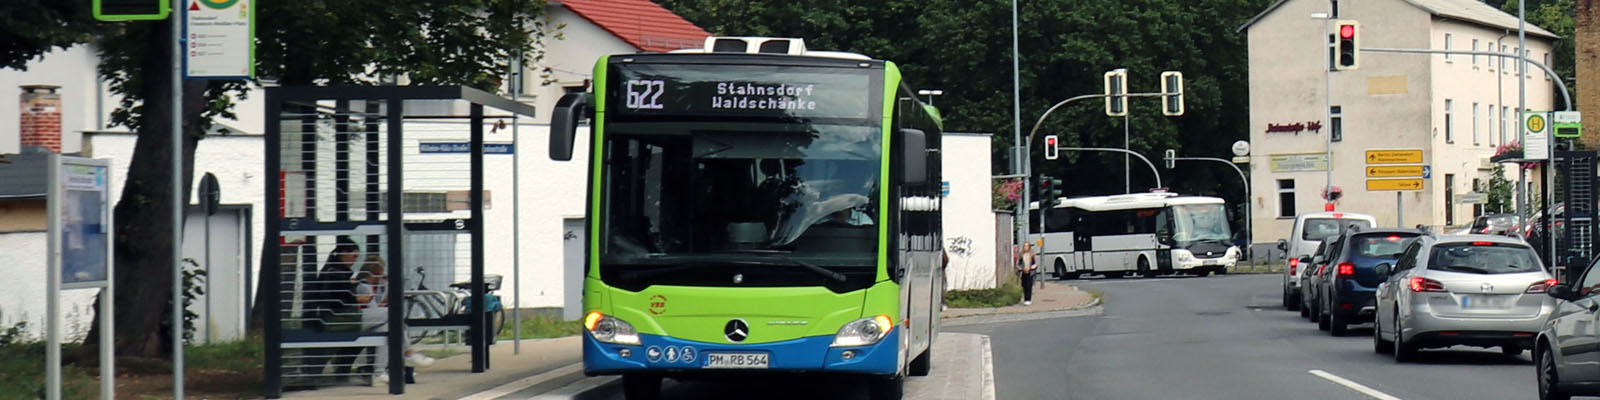 Regiobus in Stahnsdorf, Foto: Gemeinde Stahnsdorf